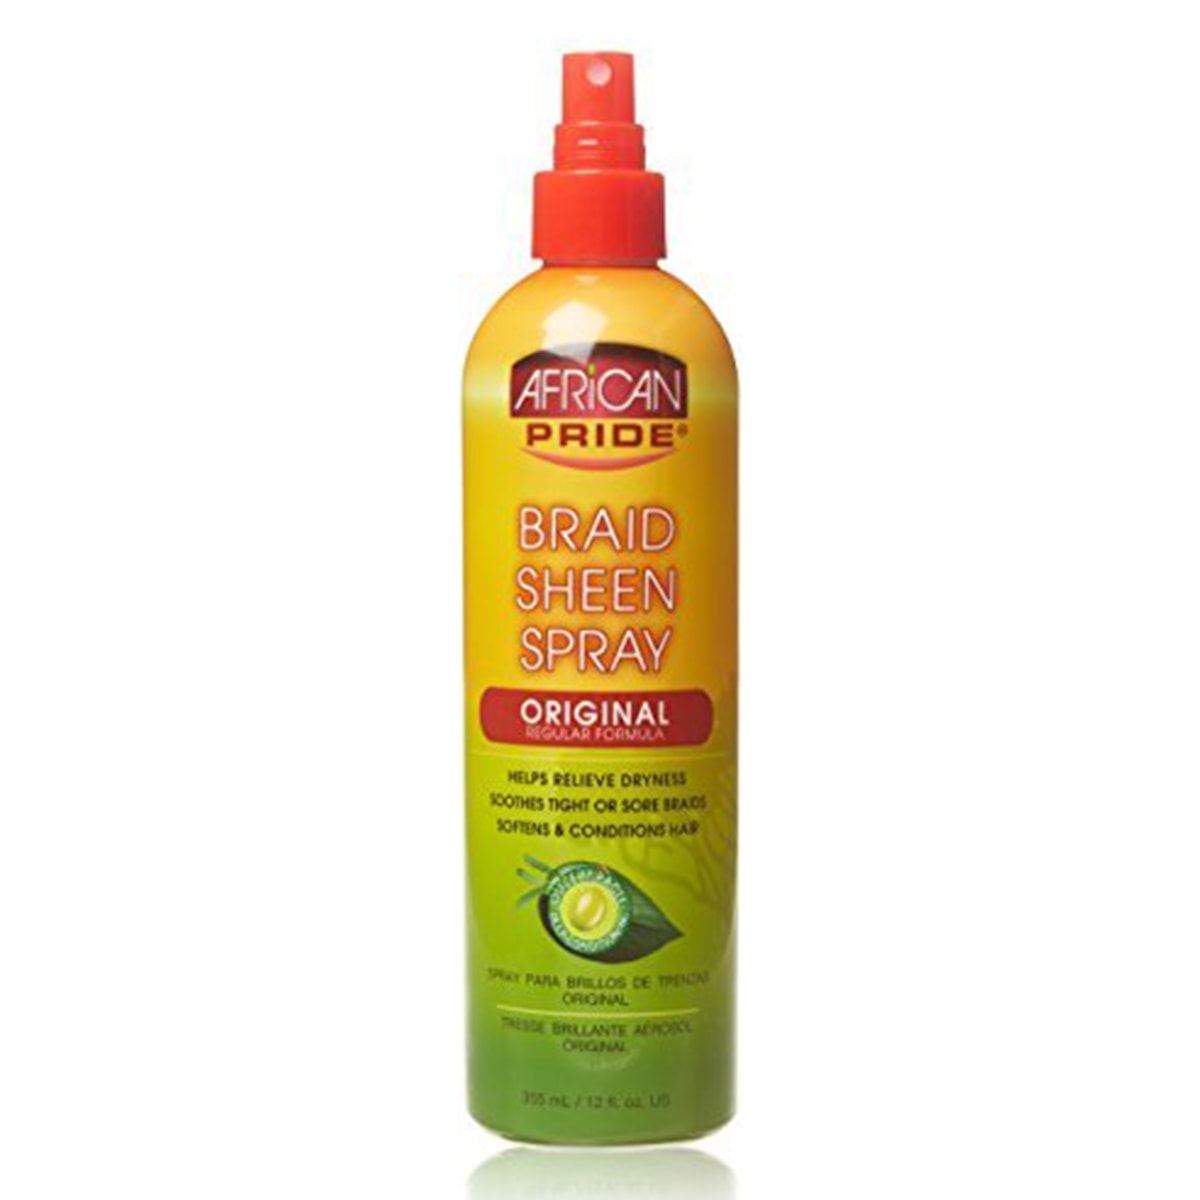 Buy African Pride Braid Sheen Spray Original - 355 ml